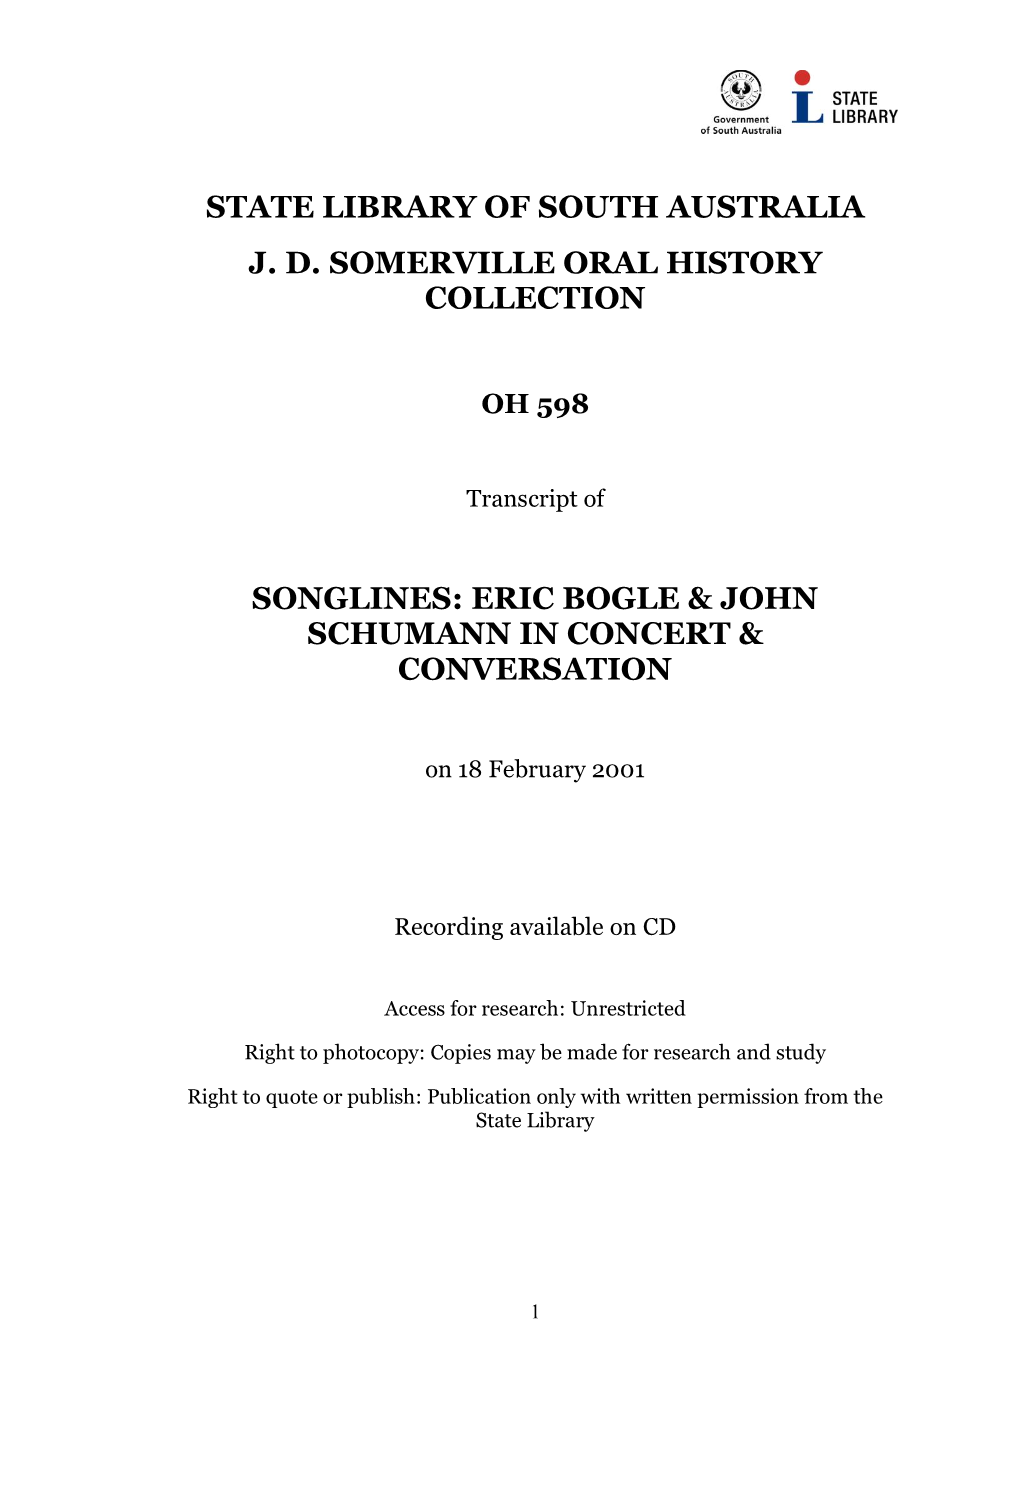 Songlines: Eric Bogle & John Schumann In